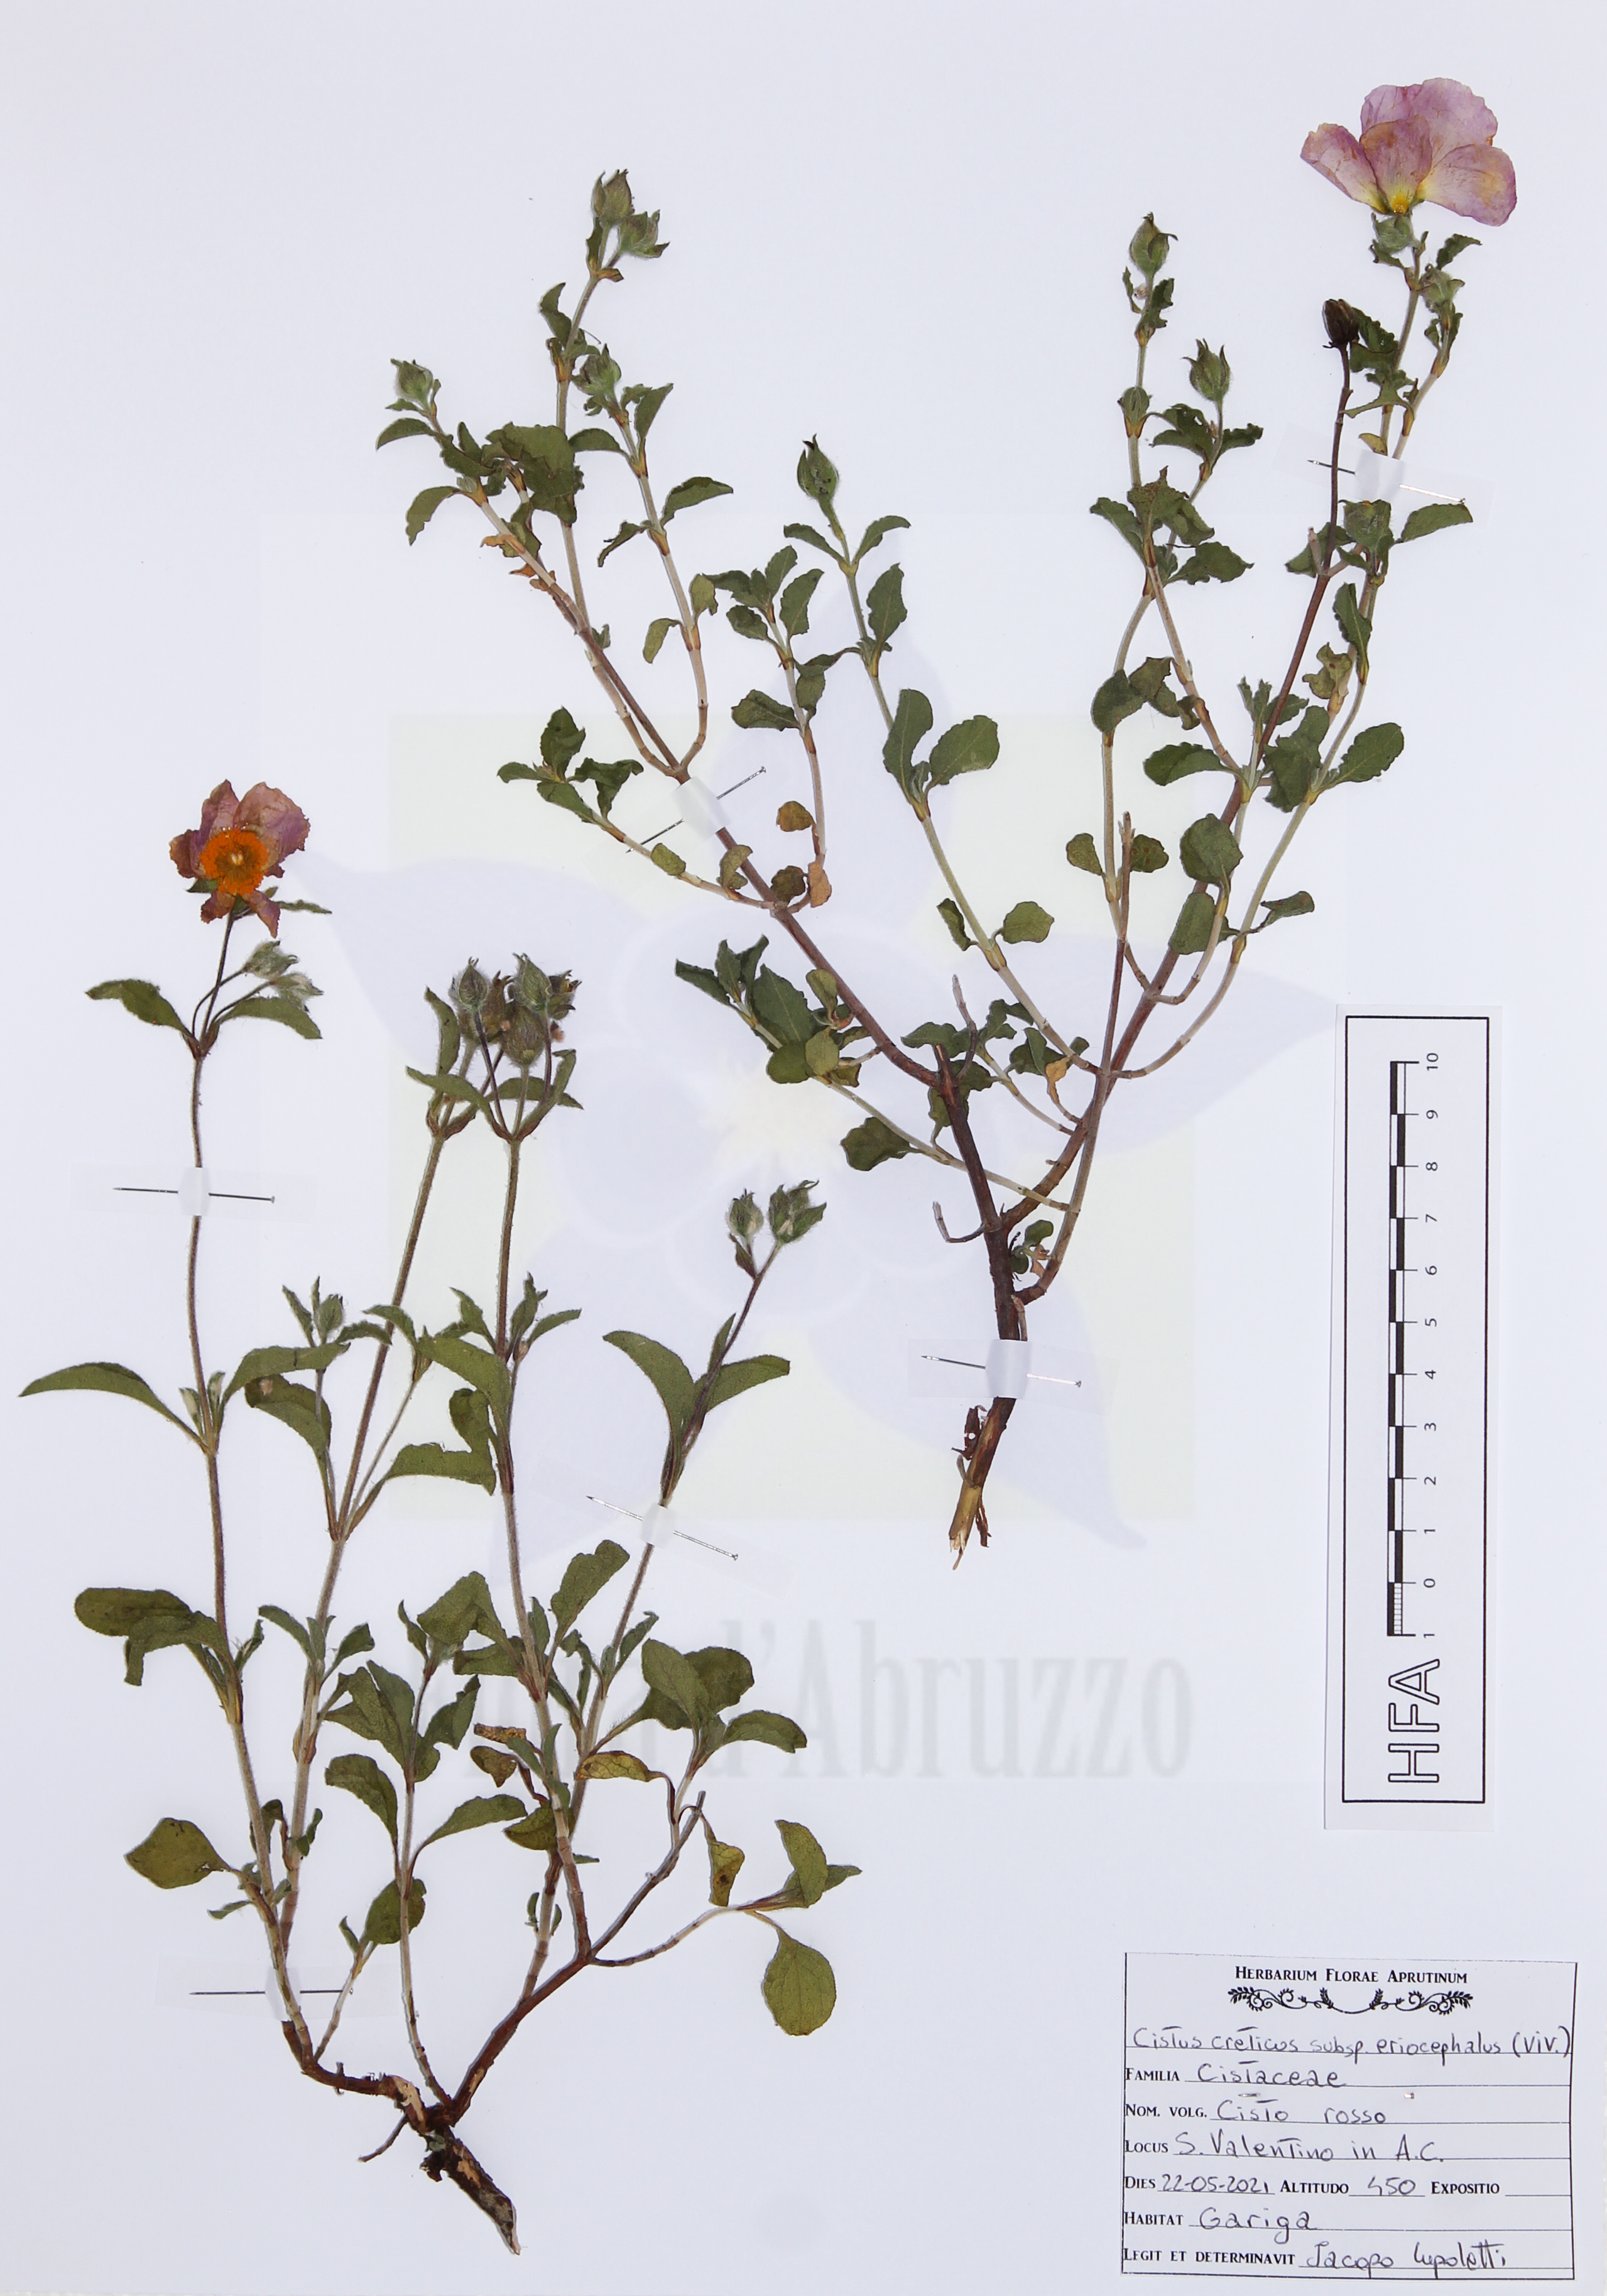 Cistus creticus subsp. eriocephalus (Viv.) Greuter & Burdet